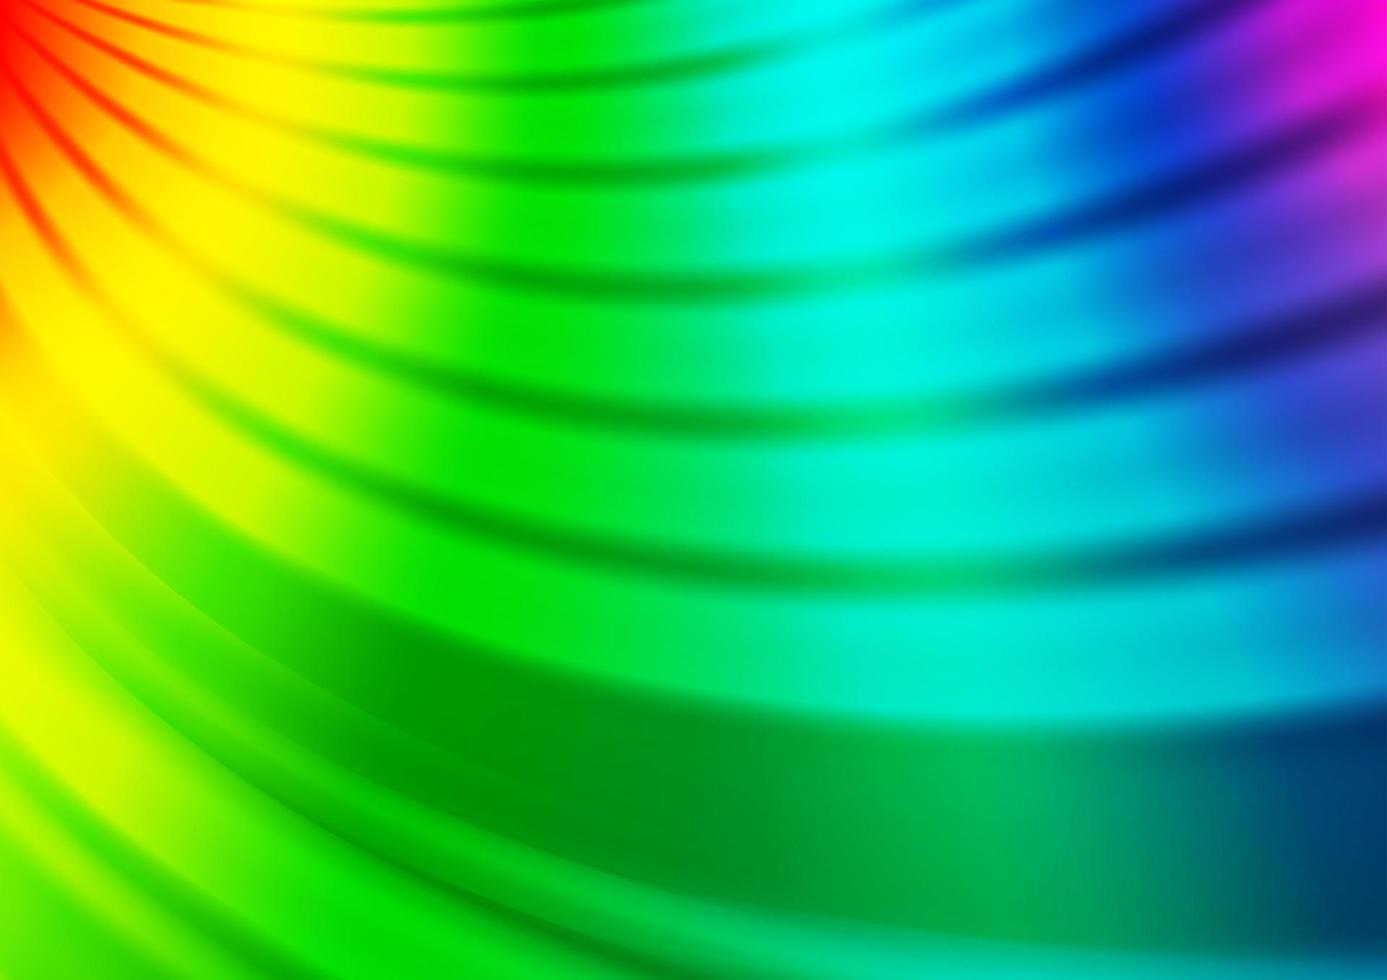 ljus mångfärgad, regnbåge vektor abstrakt ljus mall.